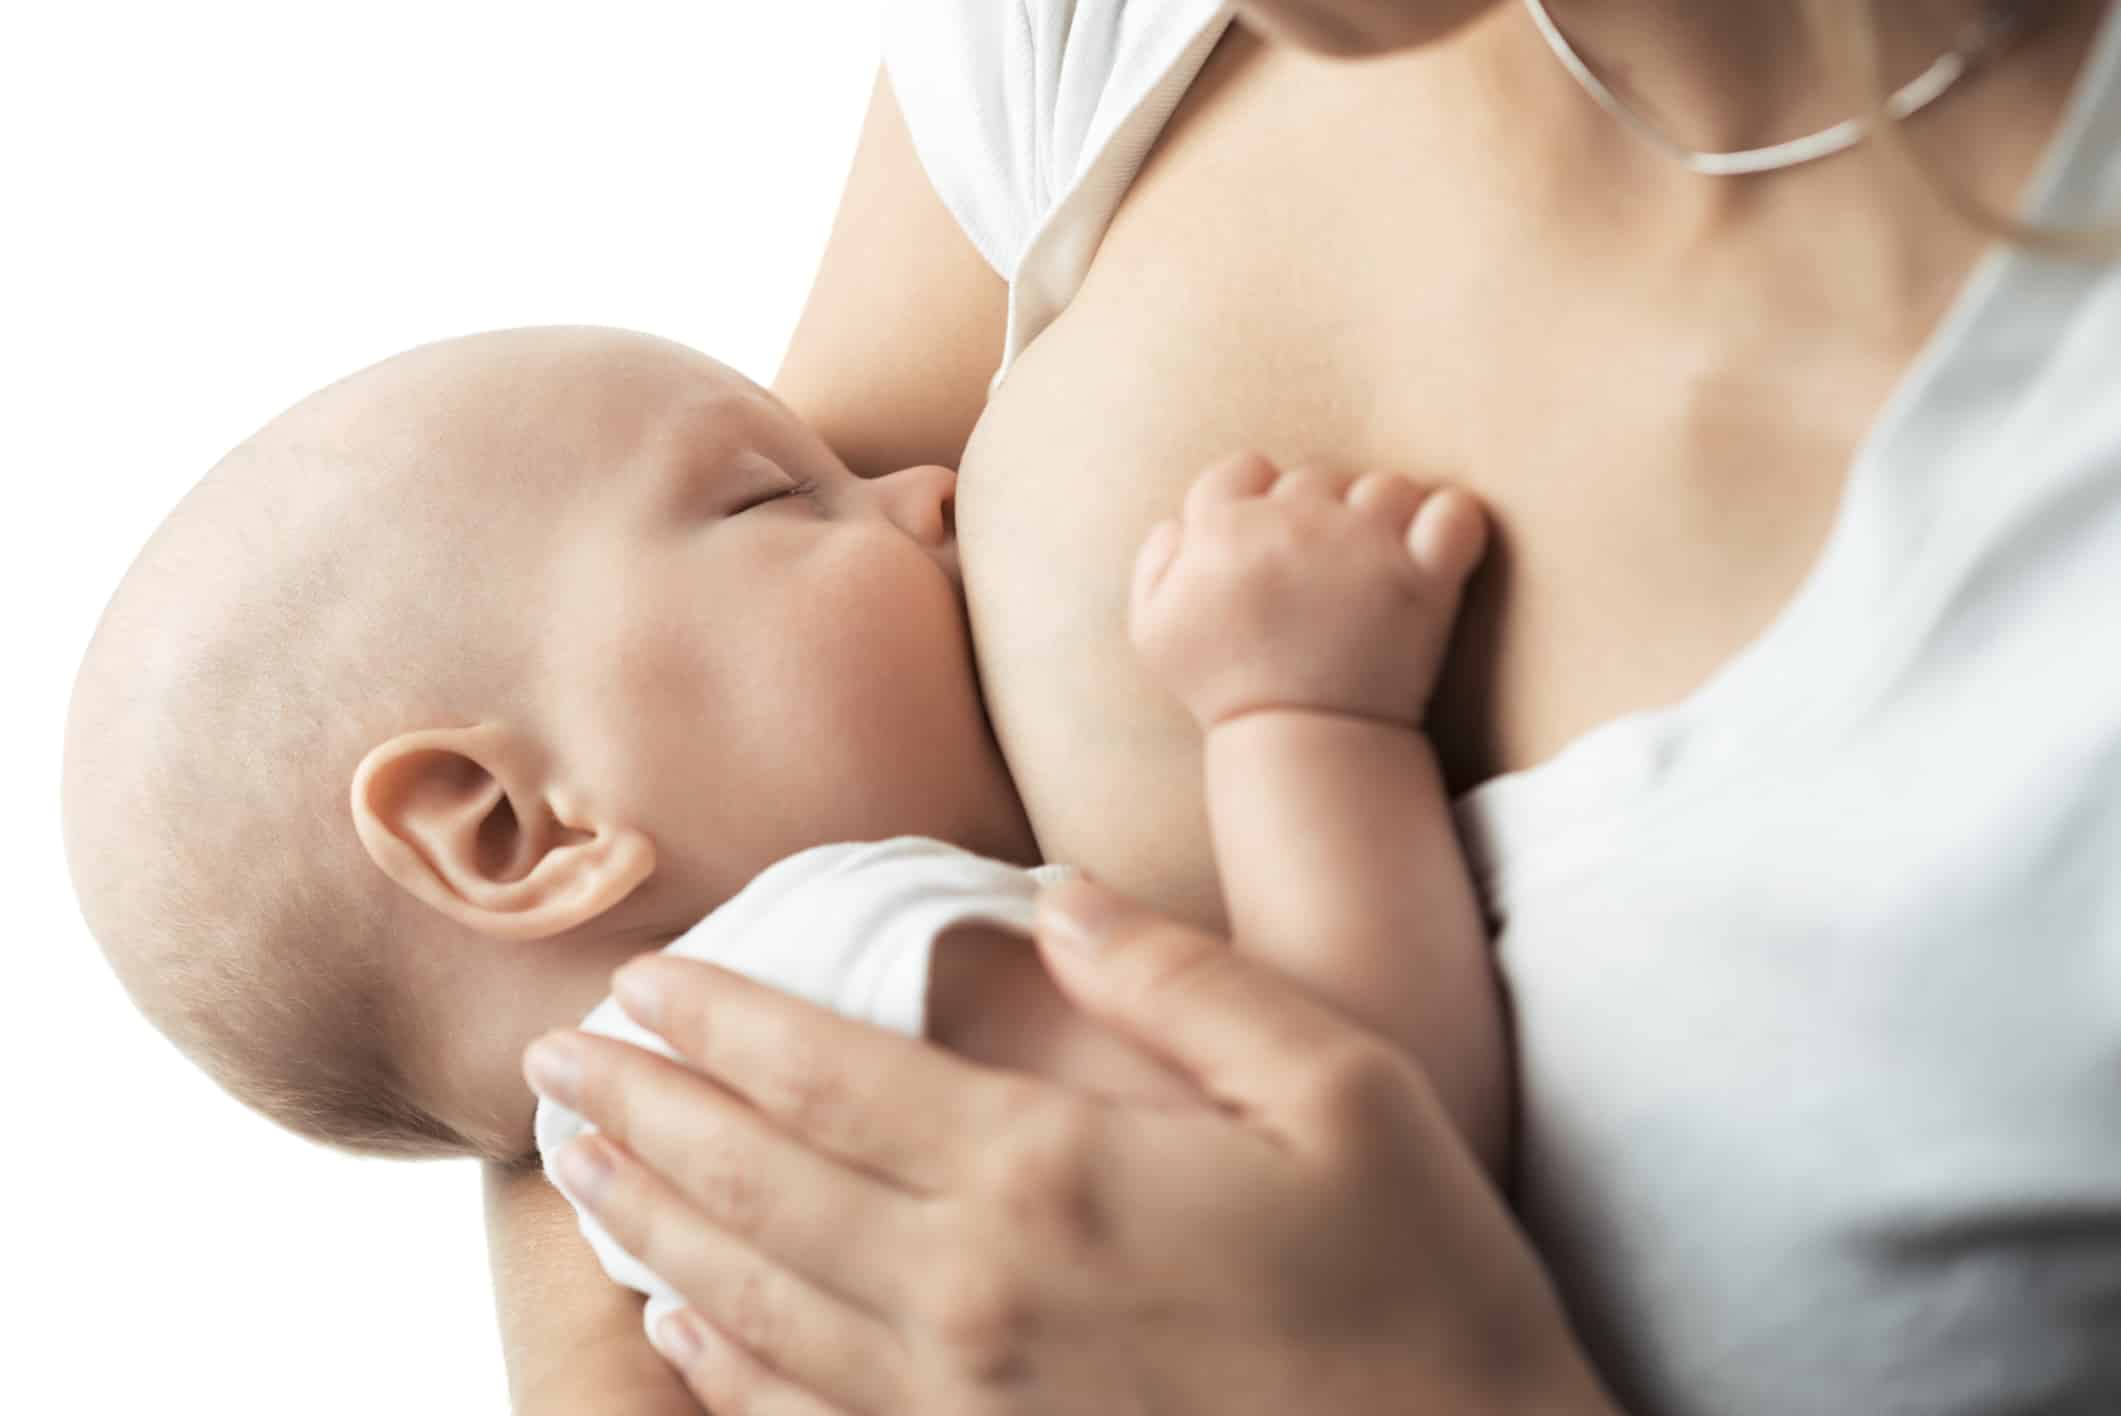 Semana Mundial de la Lactancia Materna darán cursos en línea en alusión a